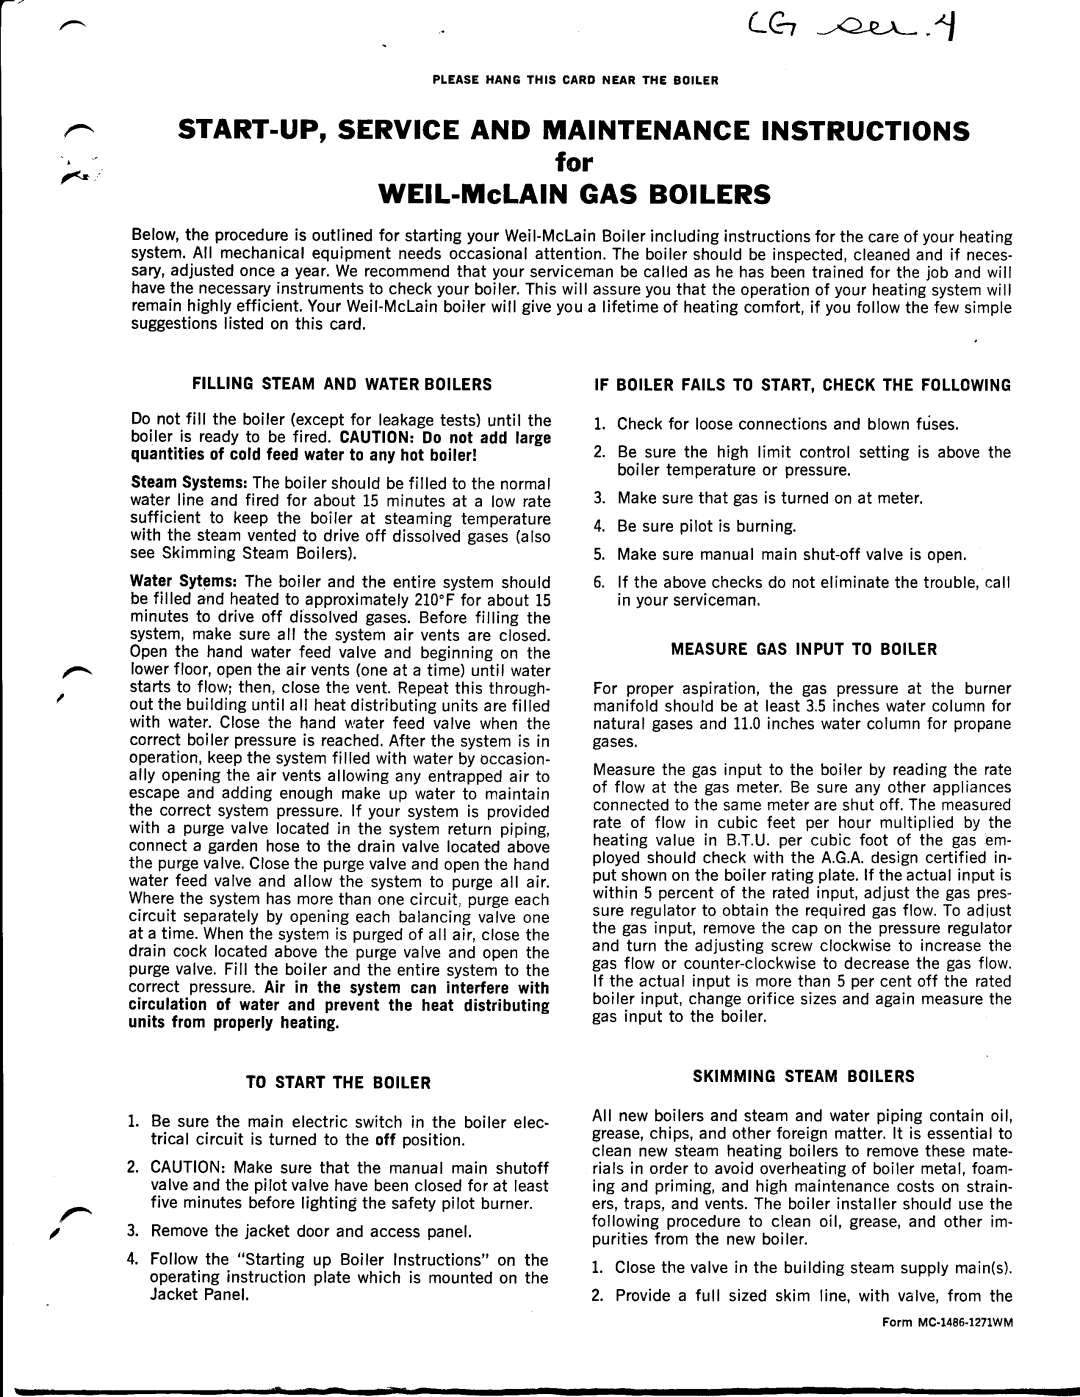 Weil-McLain CG Series 10 manual 